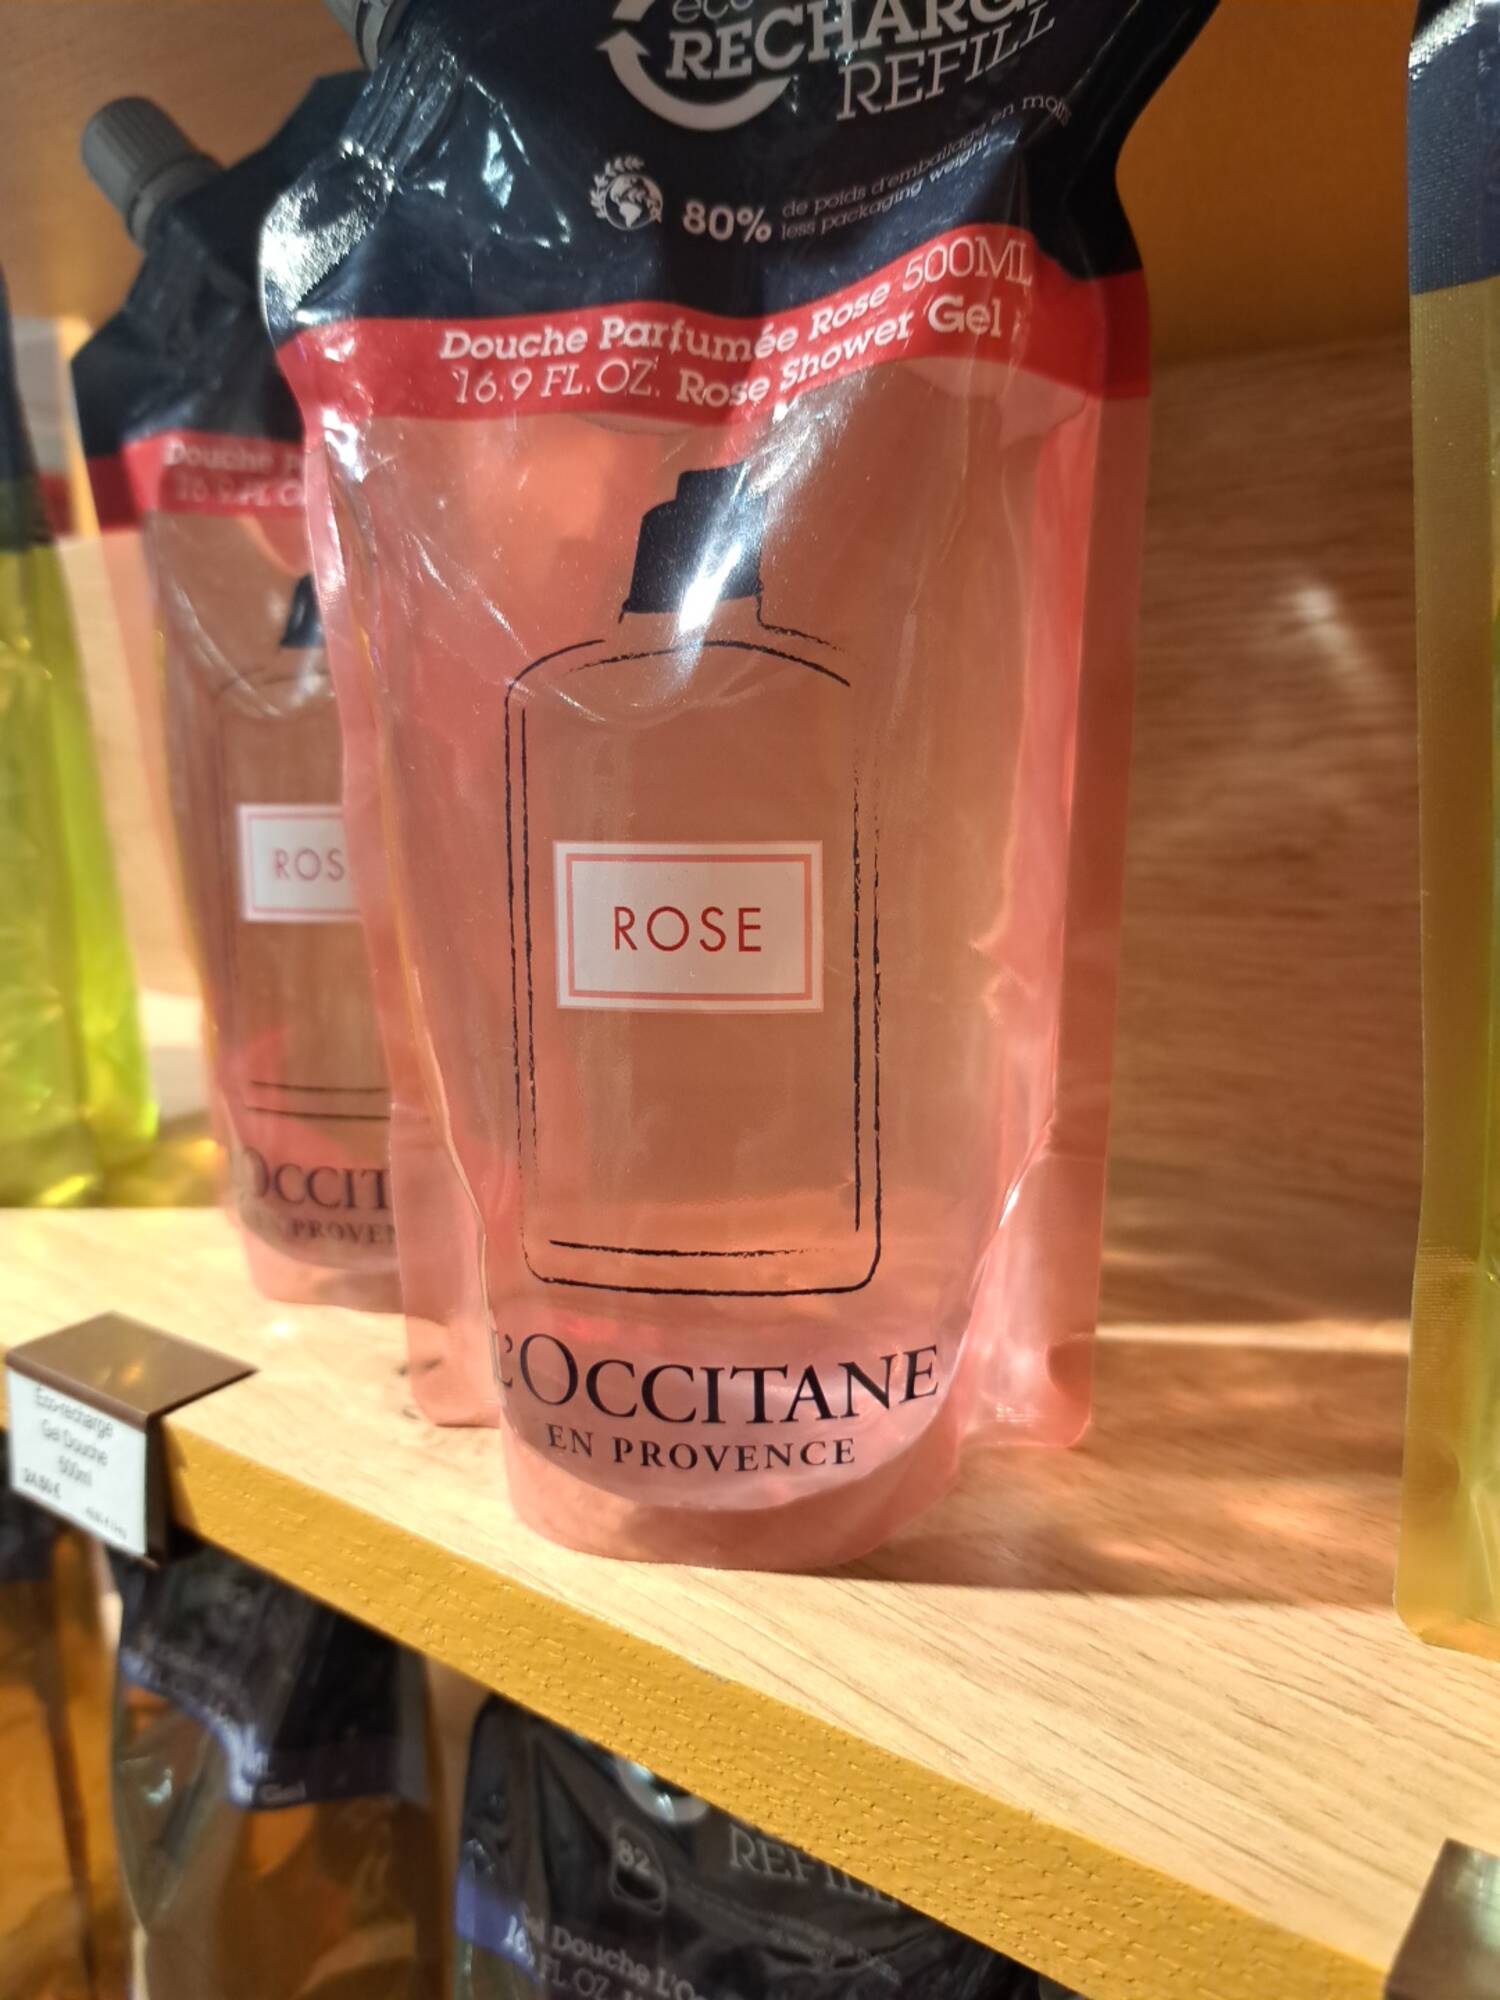 L'OCCITANE - Douche parfumée rose